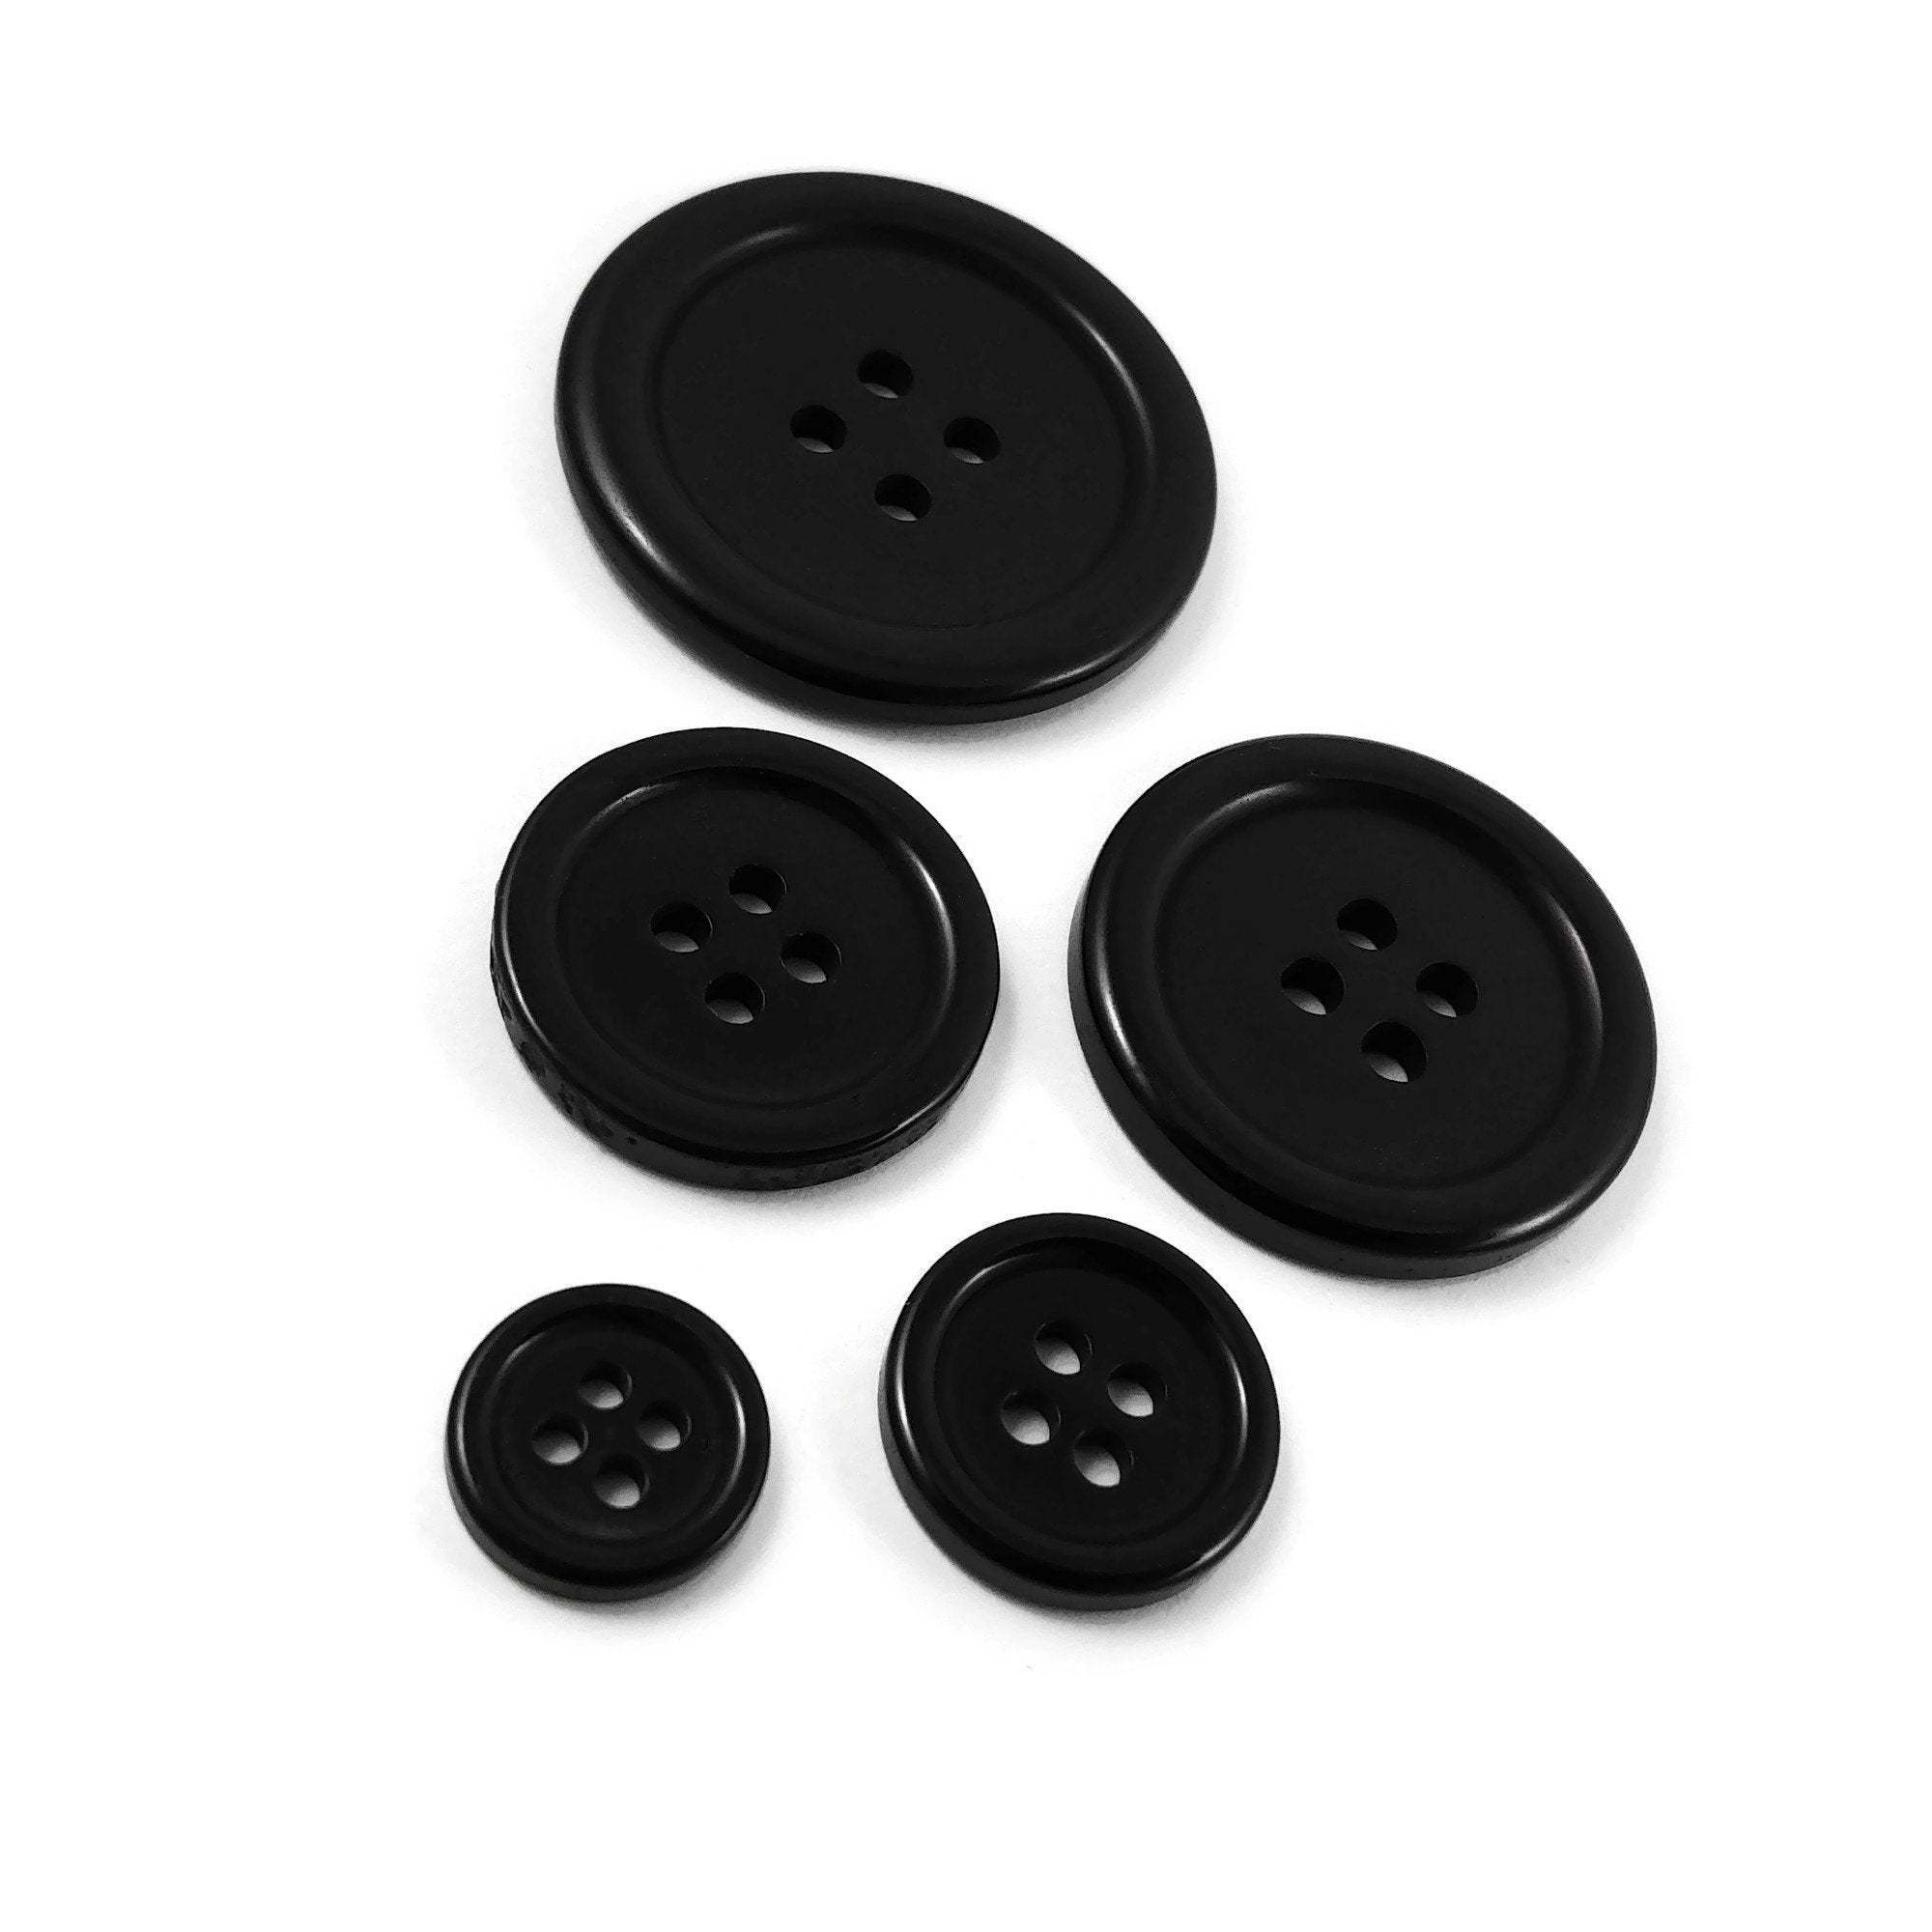 6 Boutons noirs en résine - Choisissez votre grandeur: 11, 15, 20, 25 ou 30mm